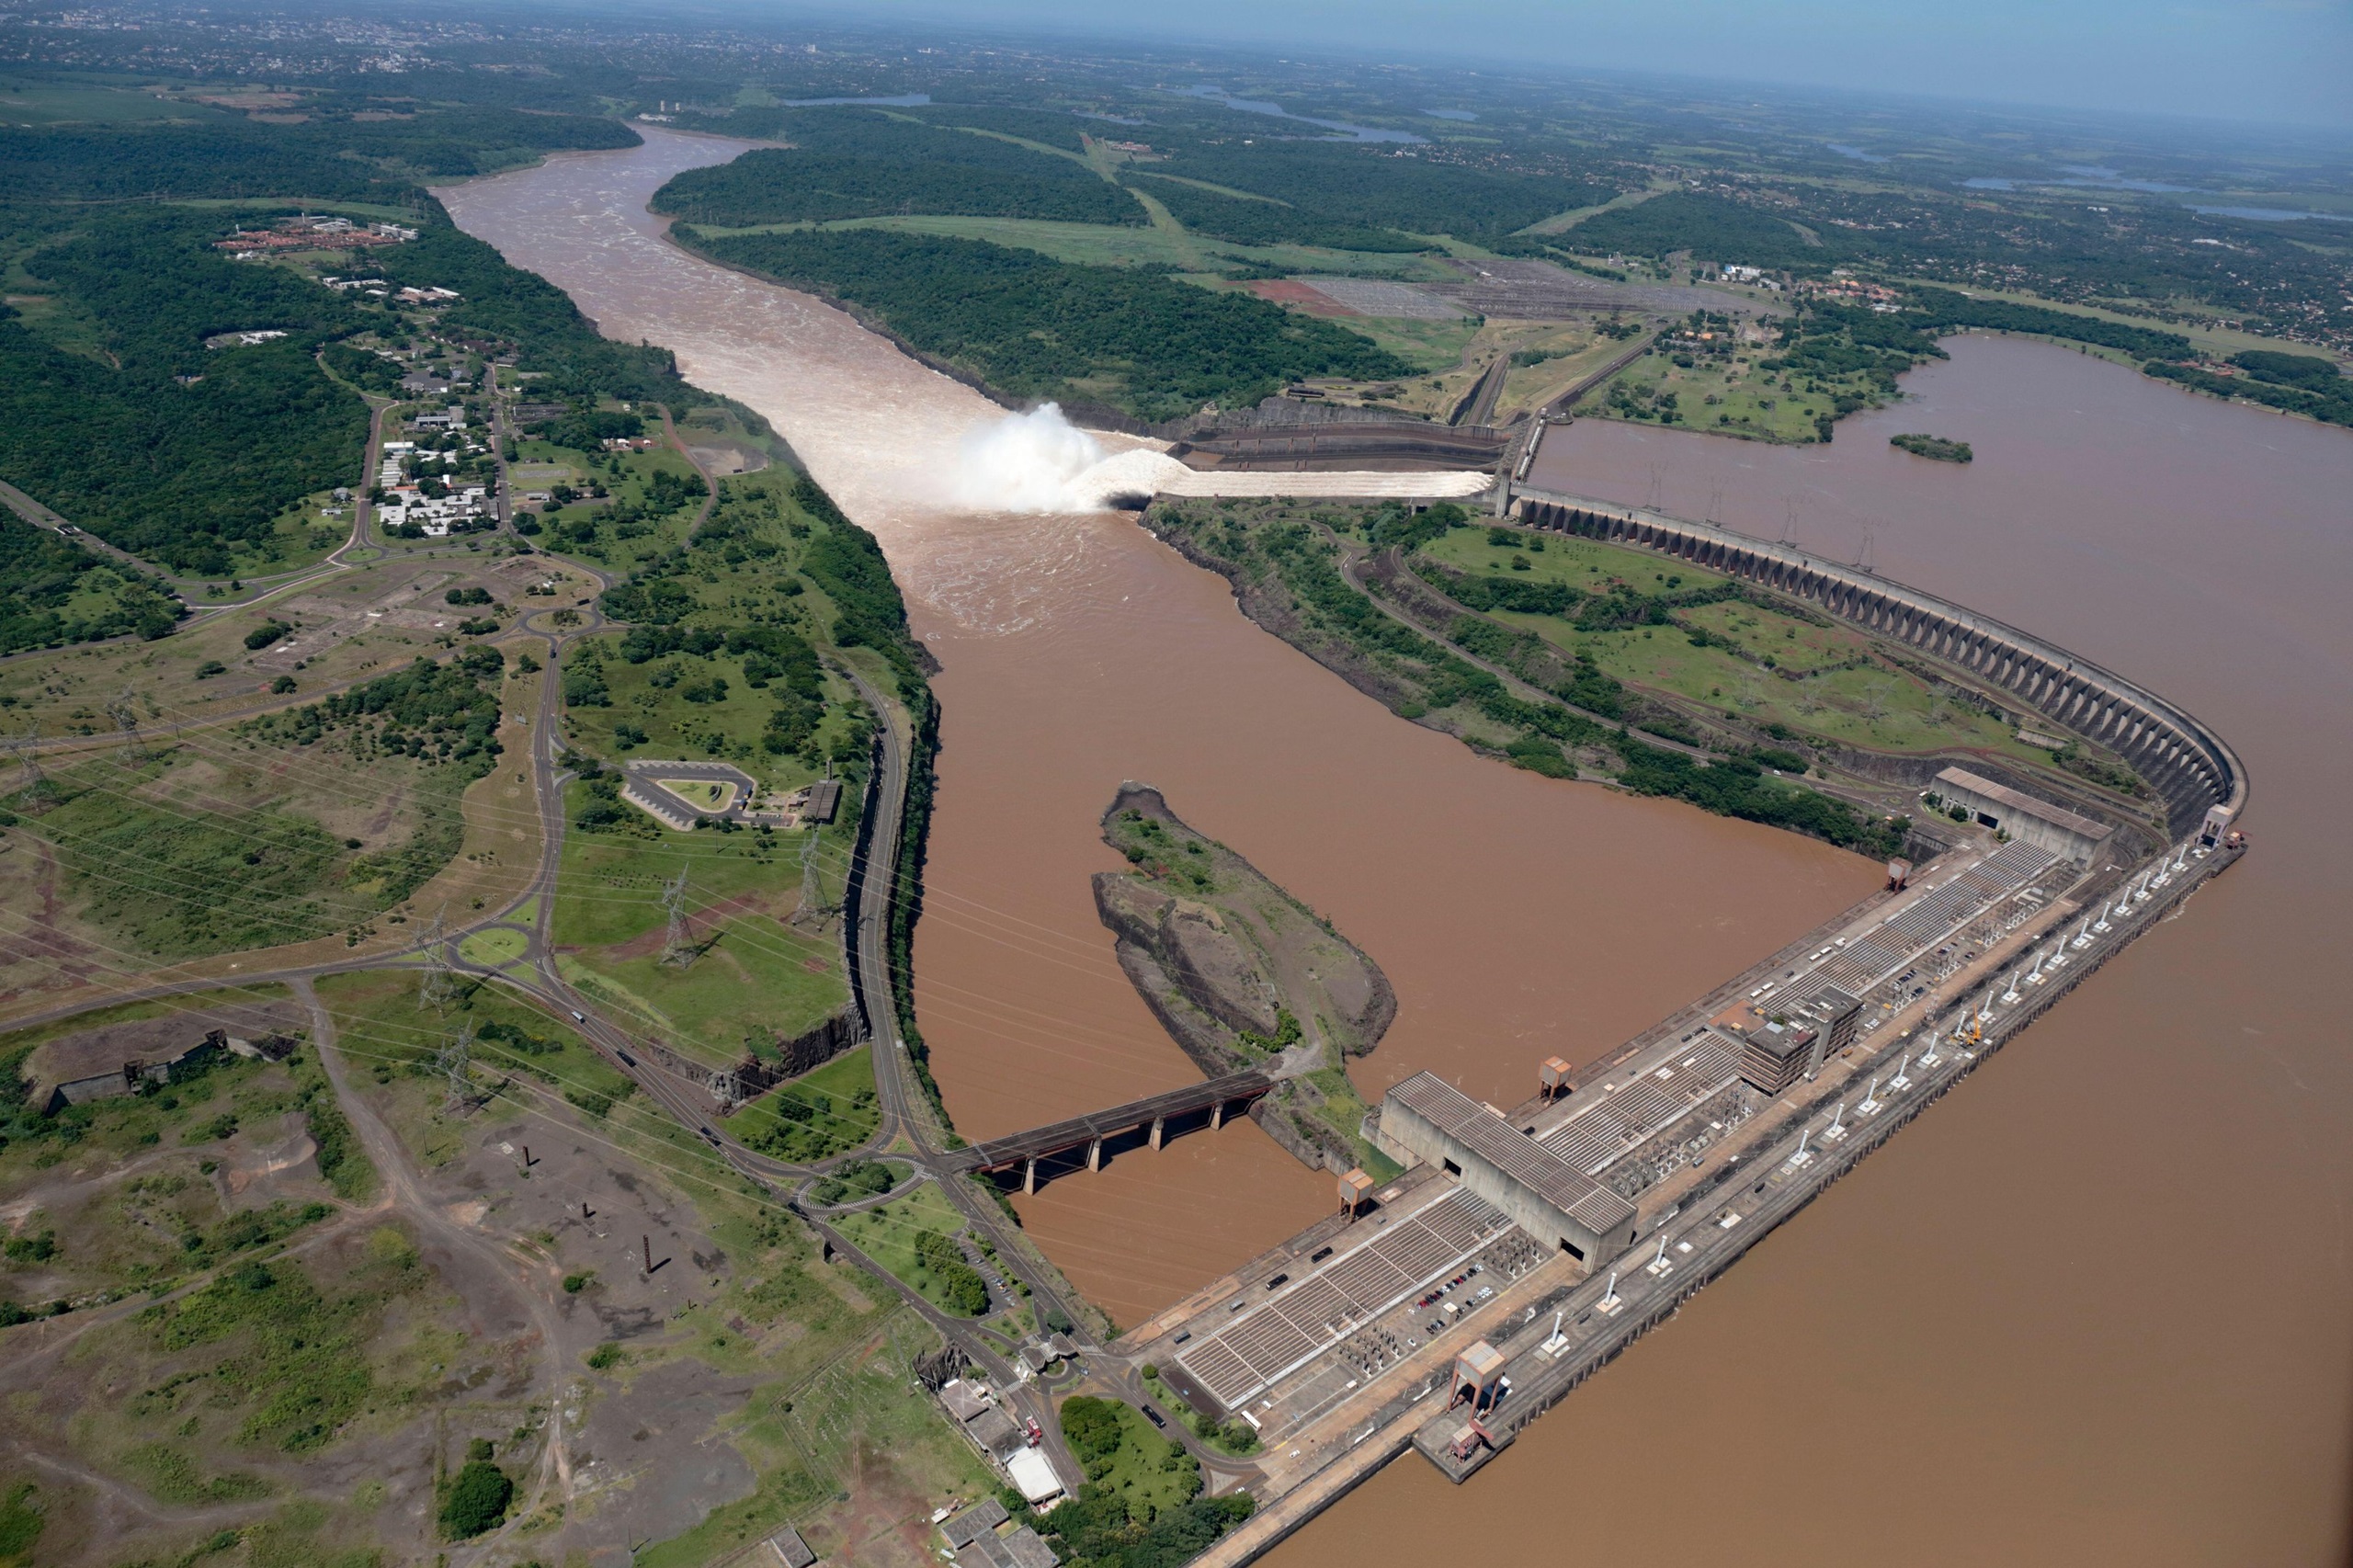 <p>La represa binacional de Itaipú, compartida por Brasil y Paraguay, es la tercera mayor central hidroeléctrica del mundo. La renegociación del tratado entre ambos países por el que se rige la represa ha generado incertidumbre y desacuerdos sobre las tarifas (Imagen: John Holmes / Alamy)</p>